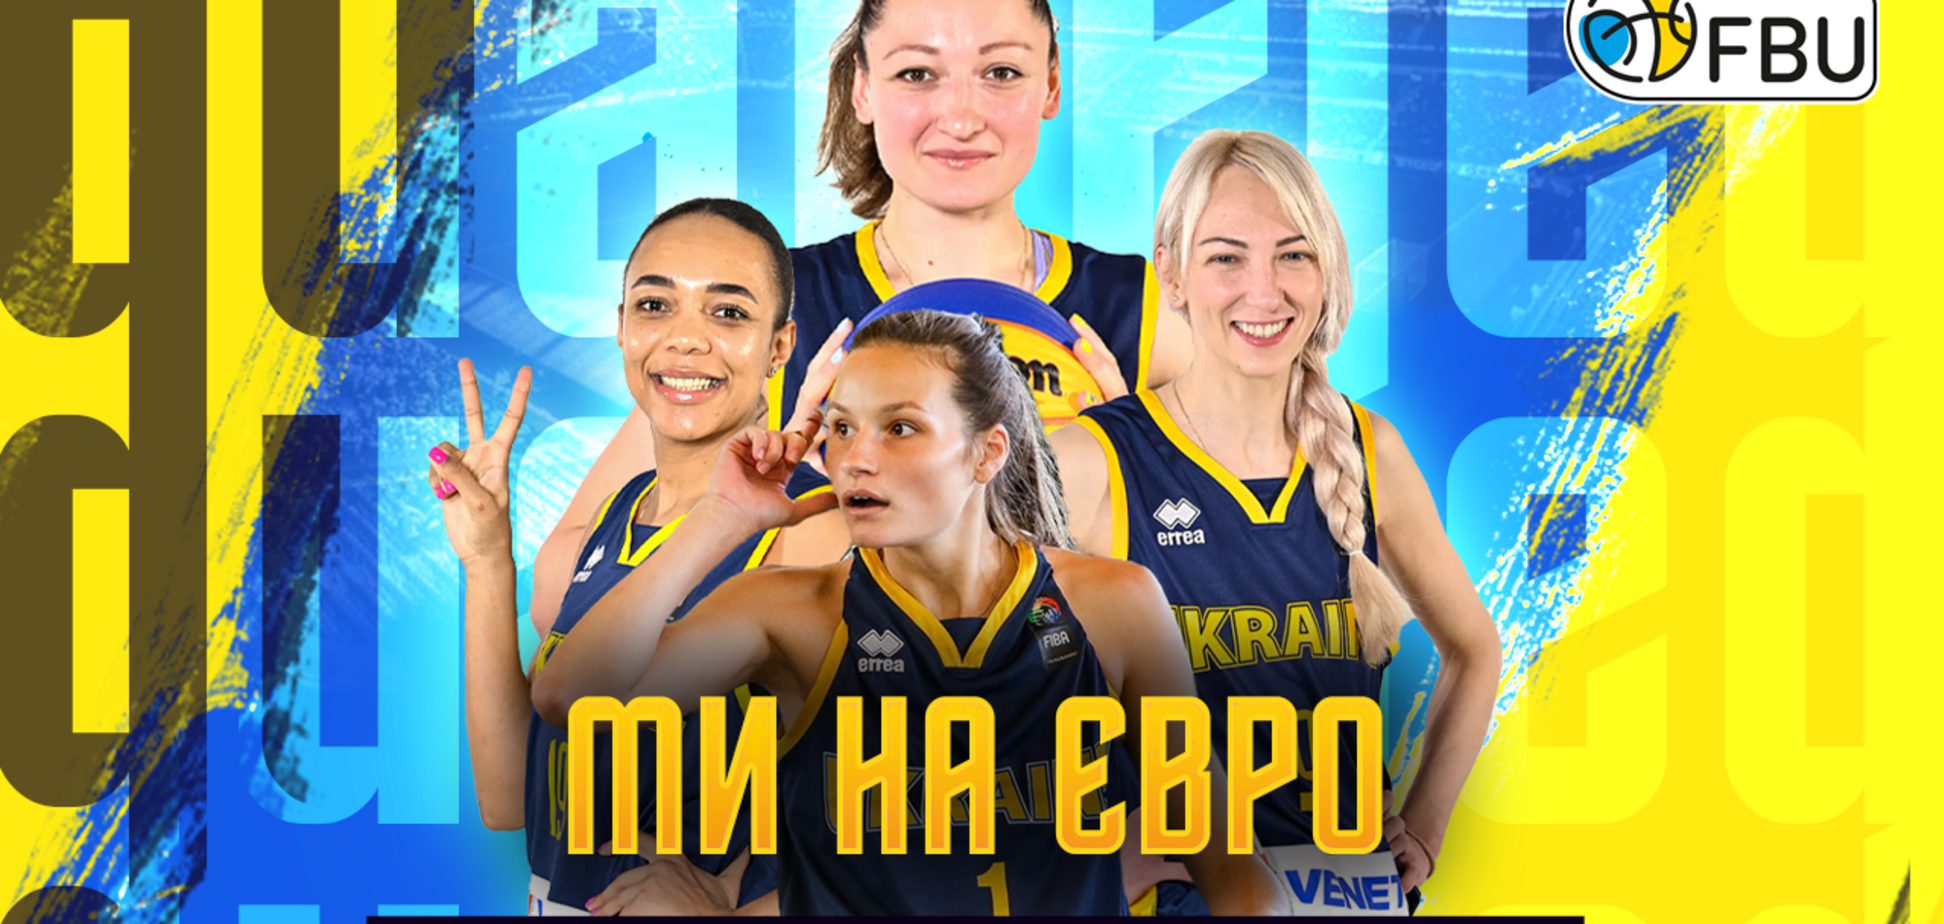 Женская сборная Украины прошла отбор без поражений и вышла на чемпионат Европы по баскетболу 3х3